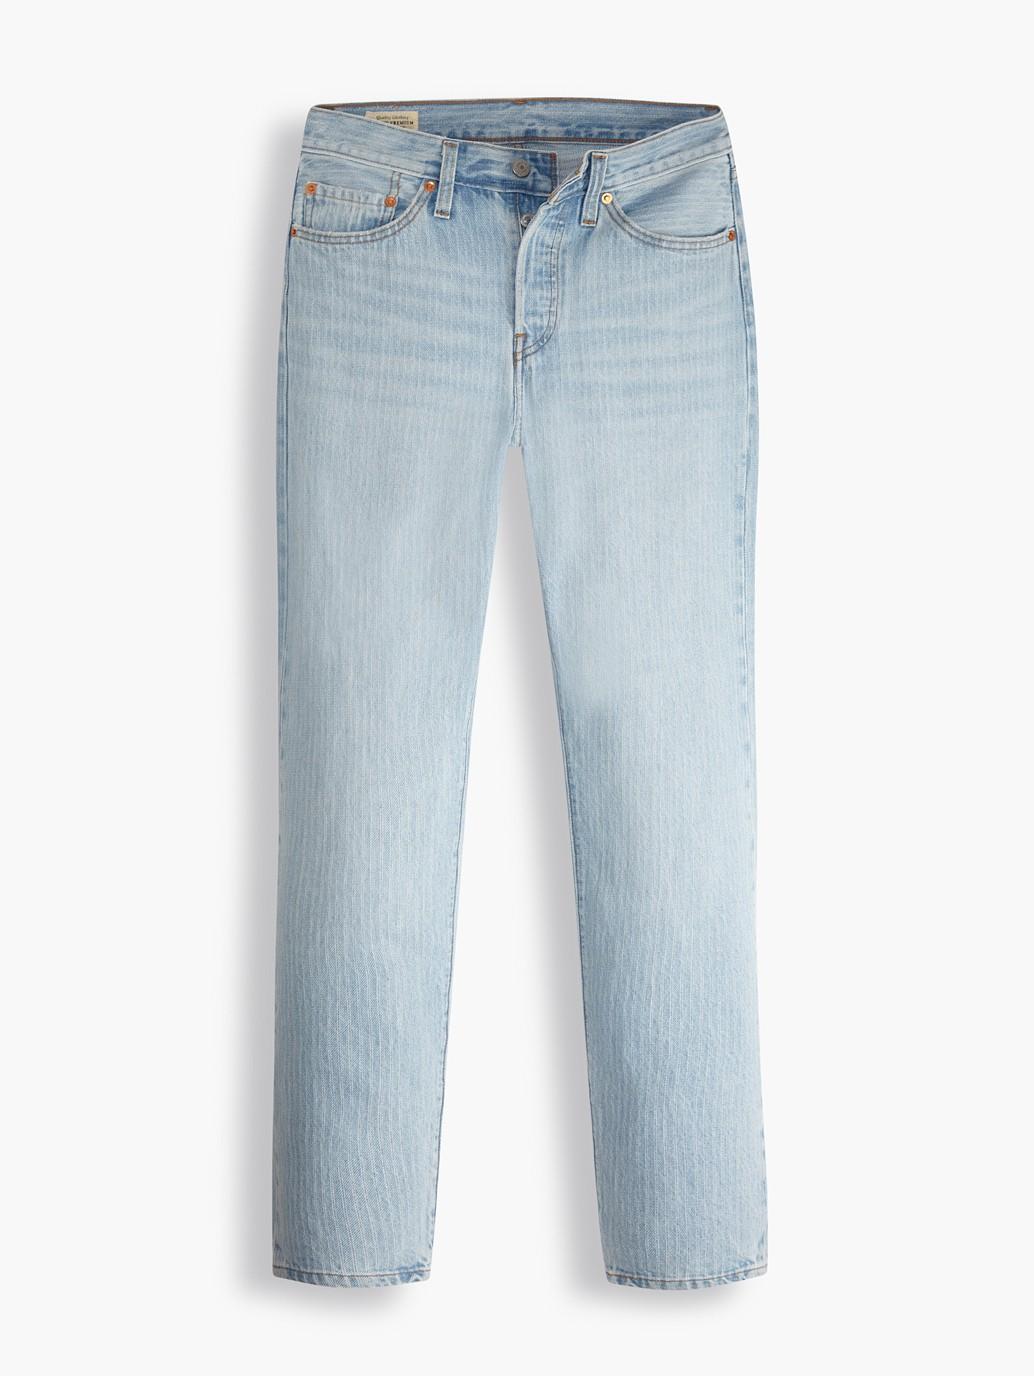 Buy Levi's® Women's 501® ‘81 Jeans| Levi’s® Official Online Store PH